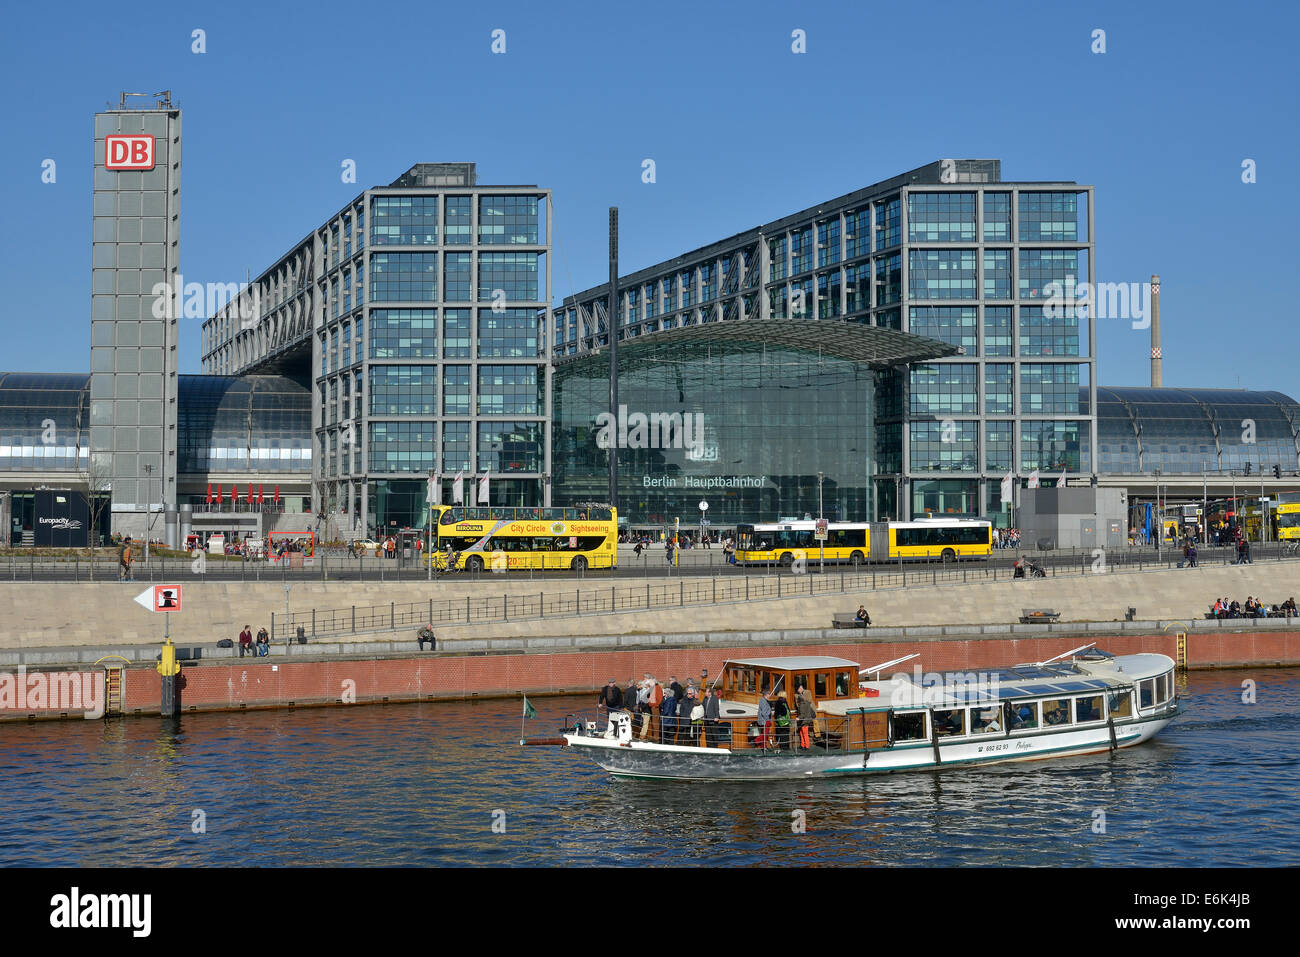 Bateau d'excursion sur la rivière Spree en face de la gare principale Hauptbahnhof Berlin, Berlin, Allemagne Banque D'Images